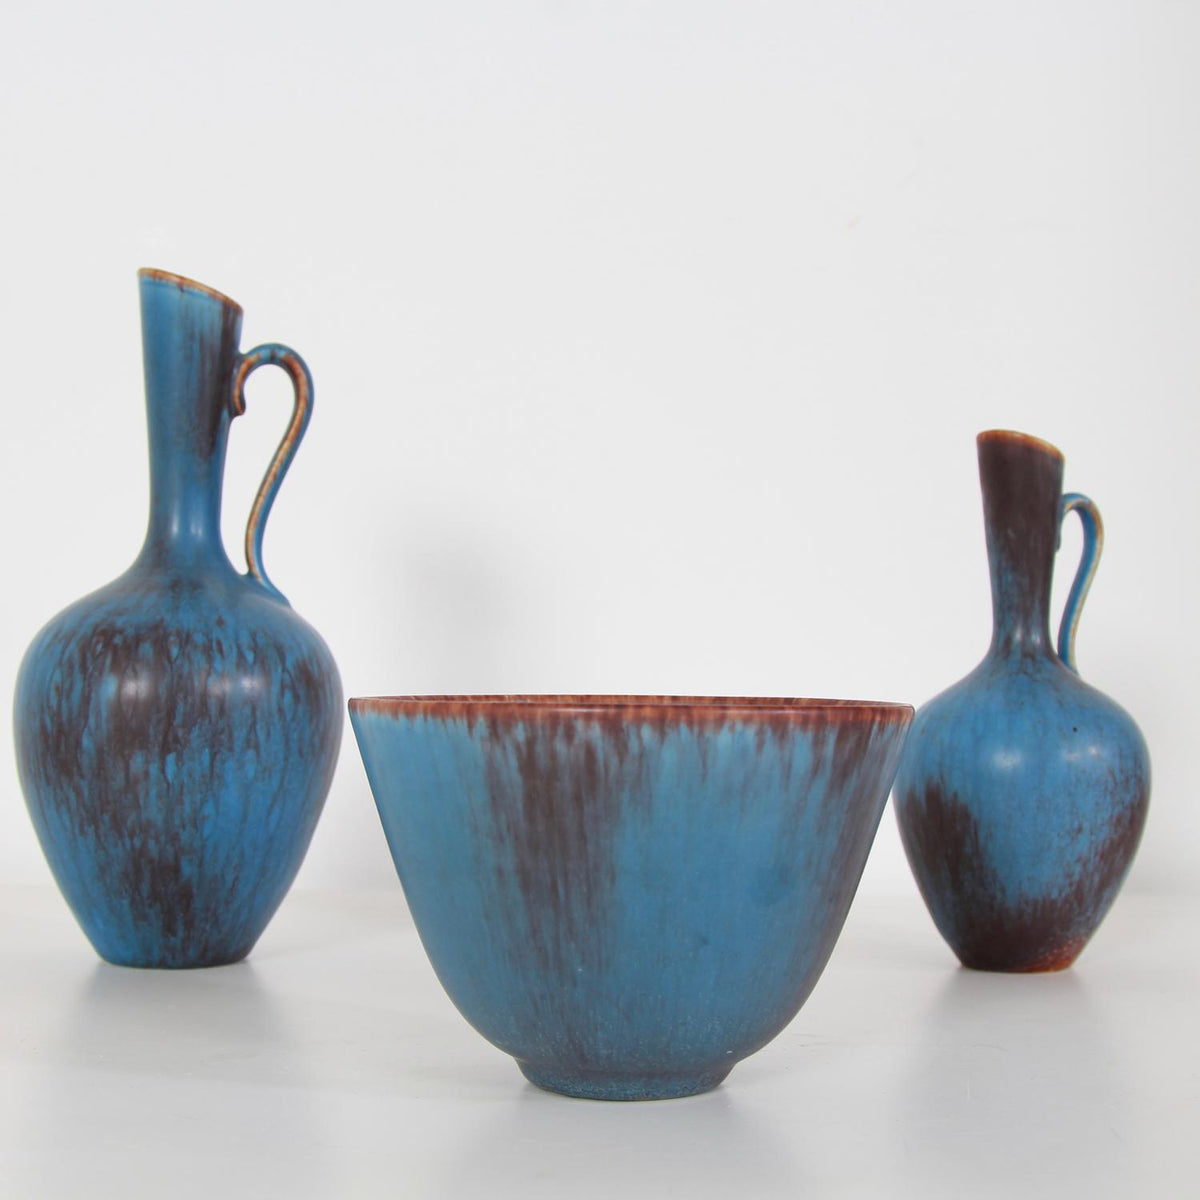 Swedish Designer Gunnar Nylund  Ceramic Powder Blue Bowl